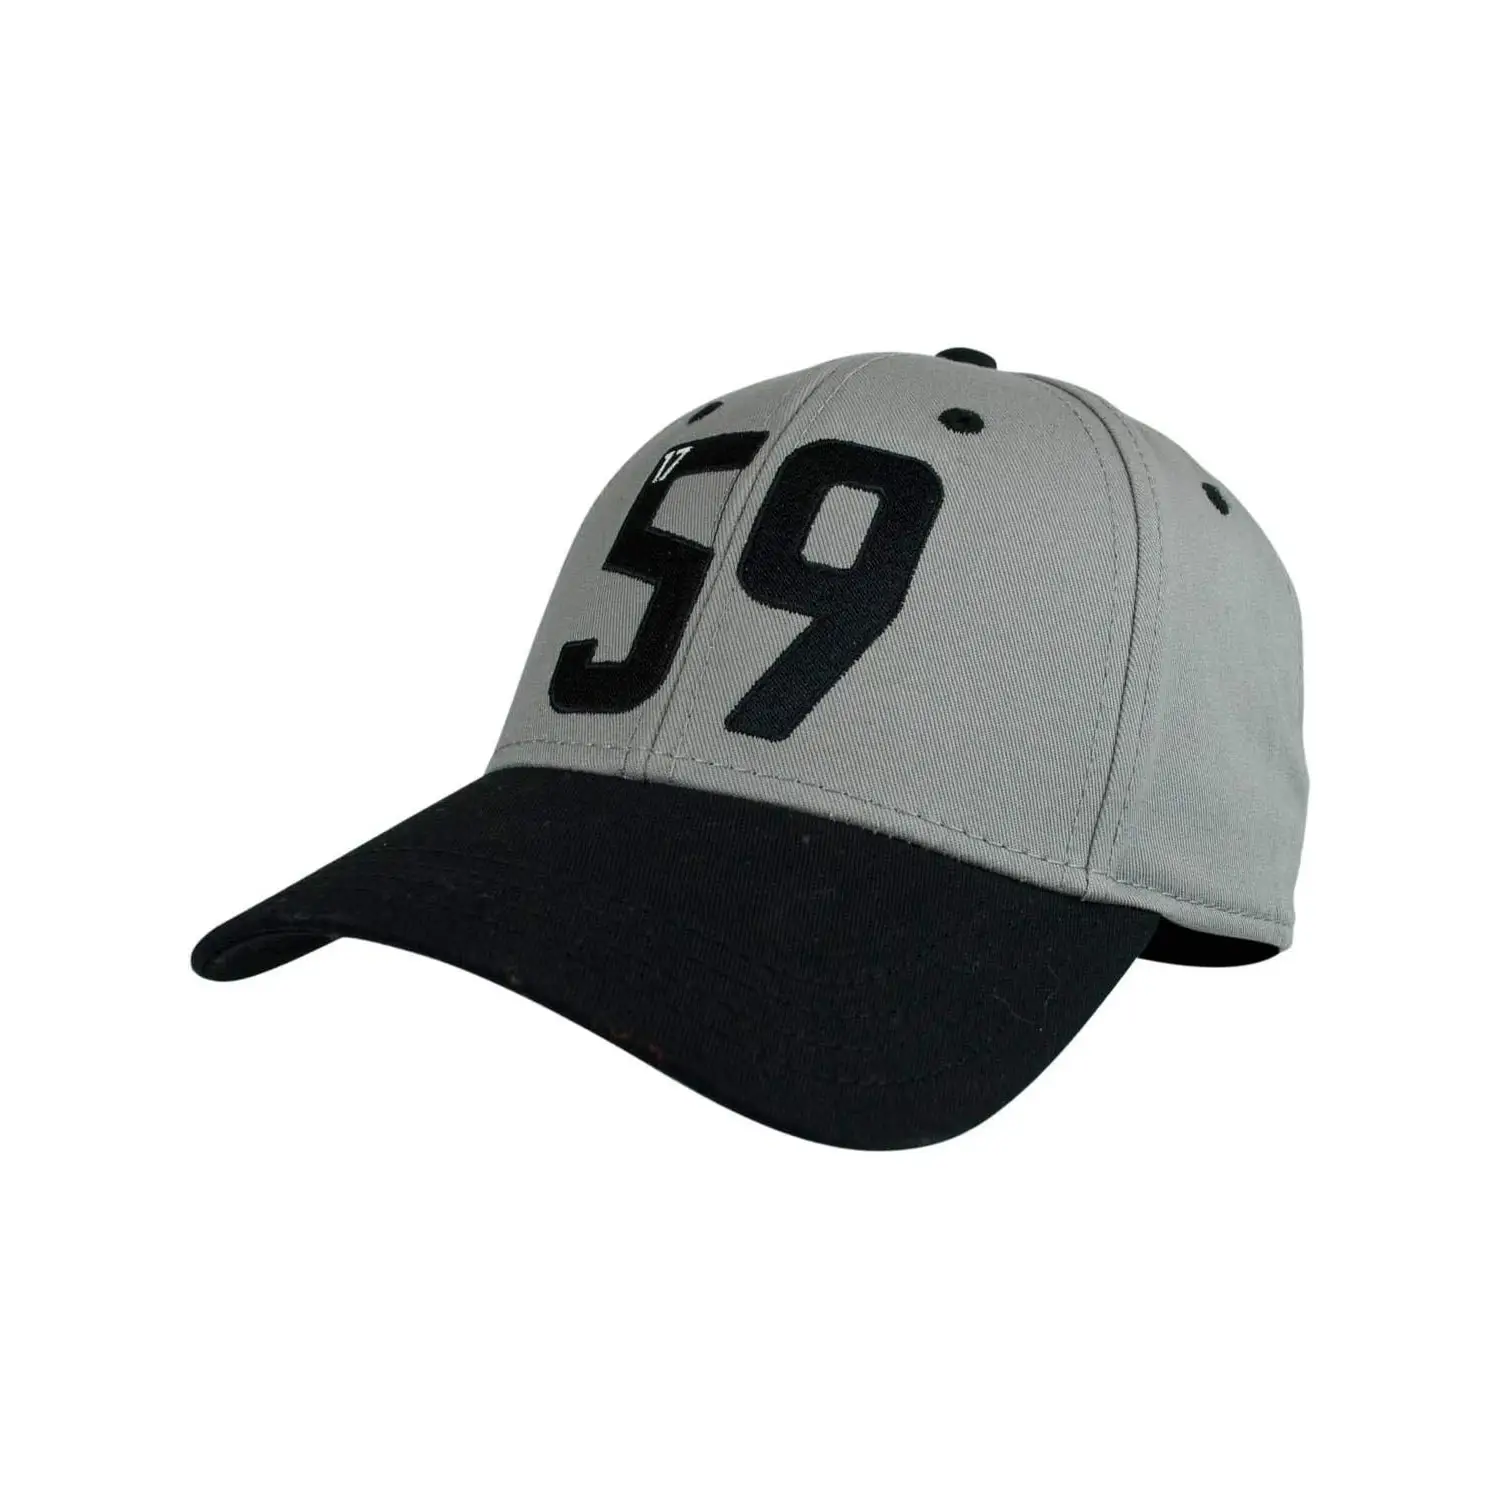 숯 회색과 검정색 맞춤형 로고가있는 조정 가능한 59 야구 모자.